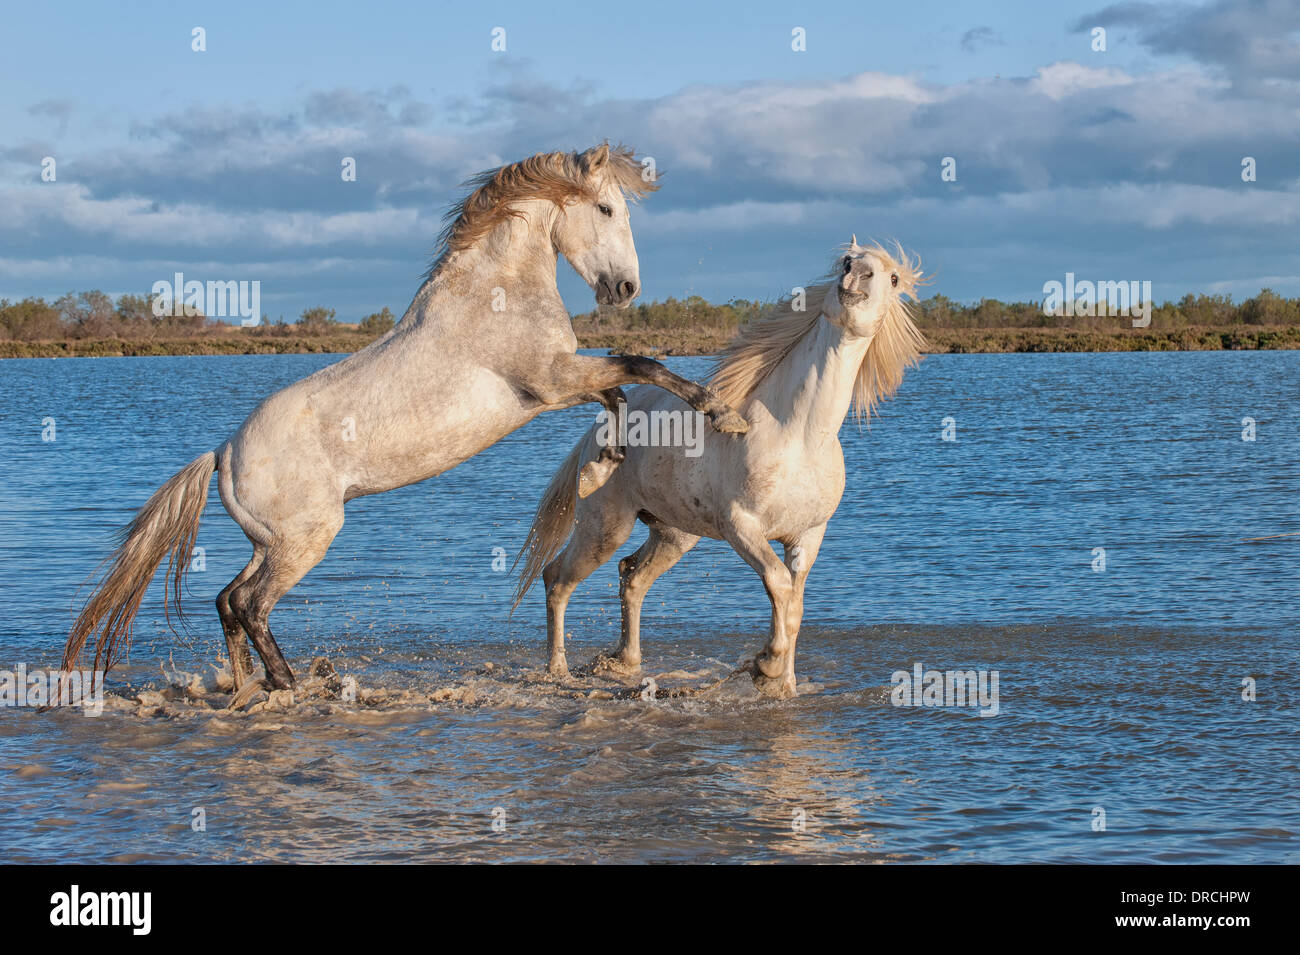 Chevaux camargue chevaux combats dans l'eau, Bouches du Rhône, France Banque D'Images